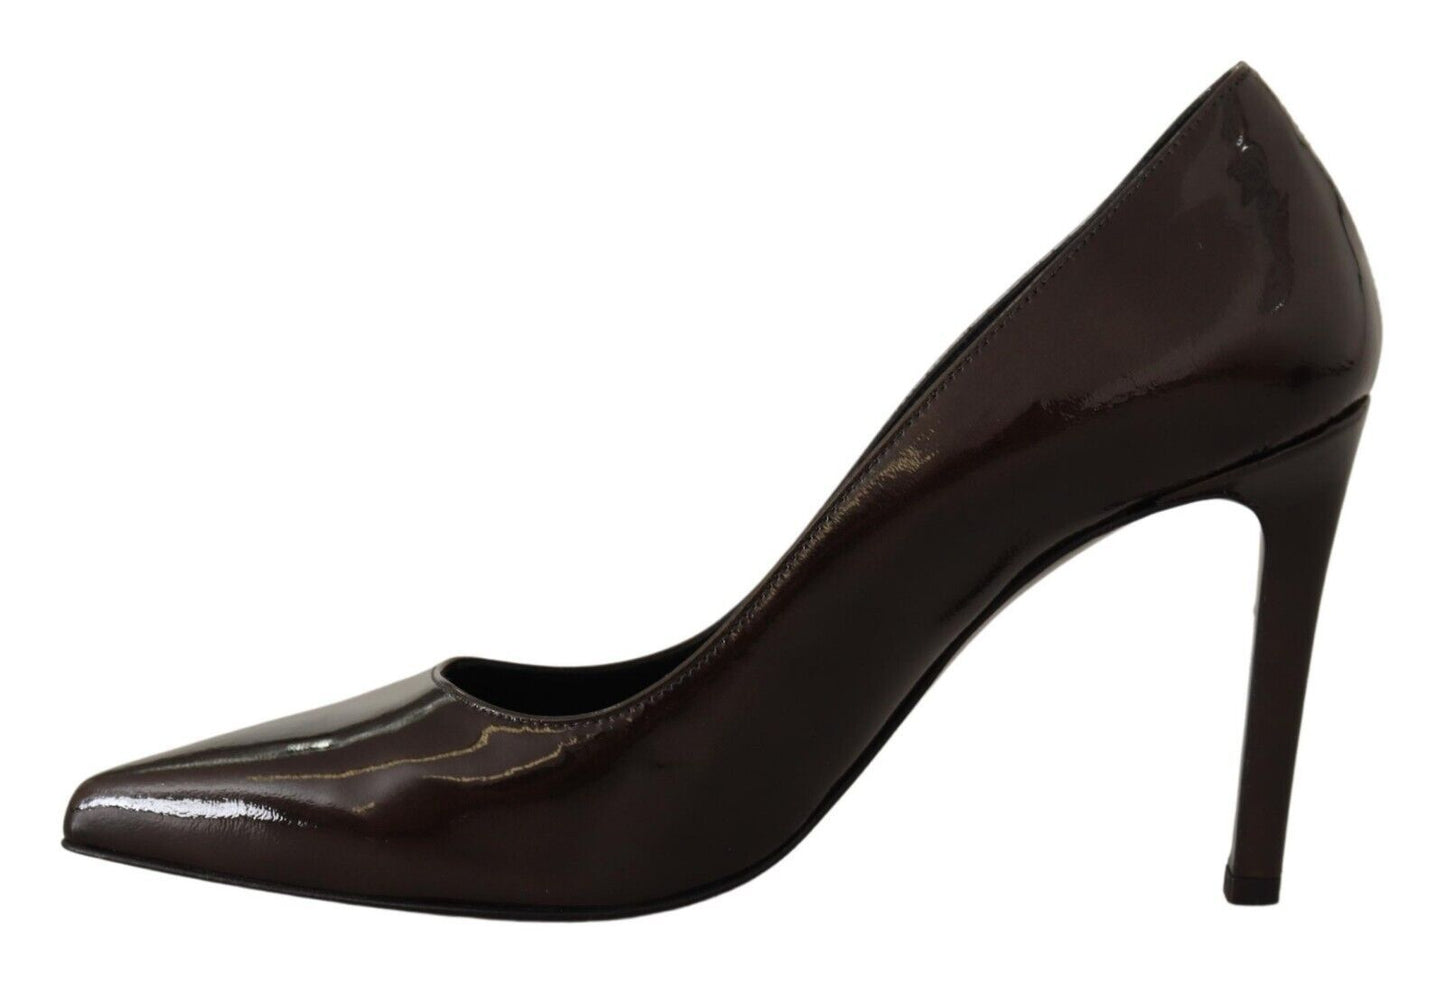 Sofia Brown Patentleder Stiletto Heels pumpt Schuhe